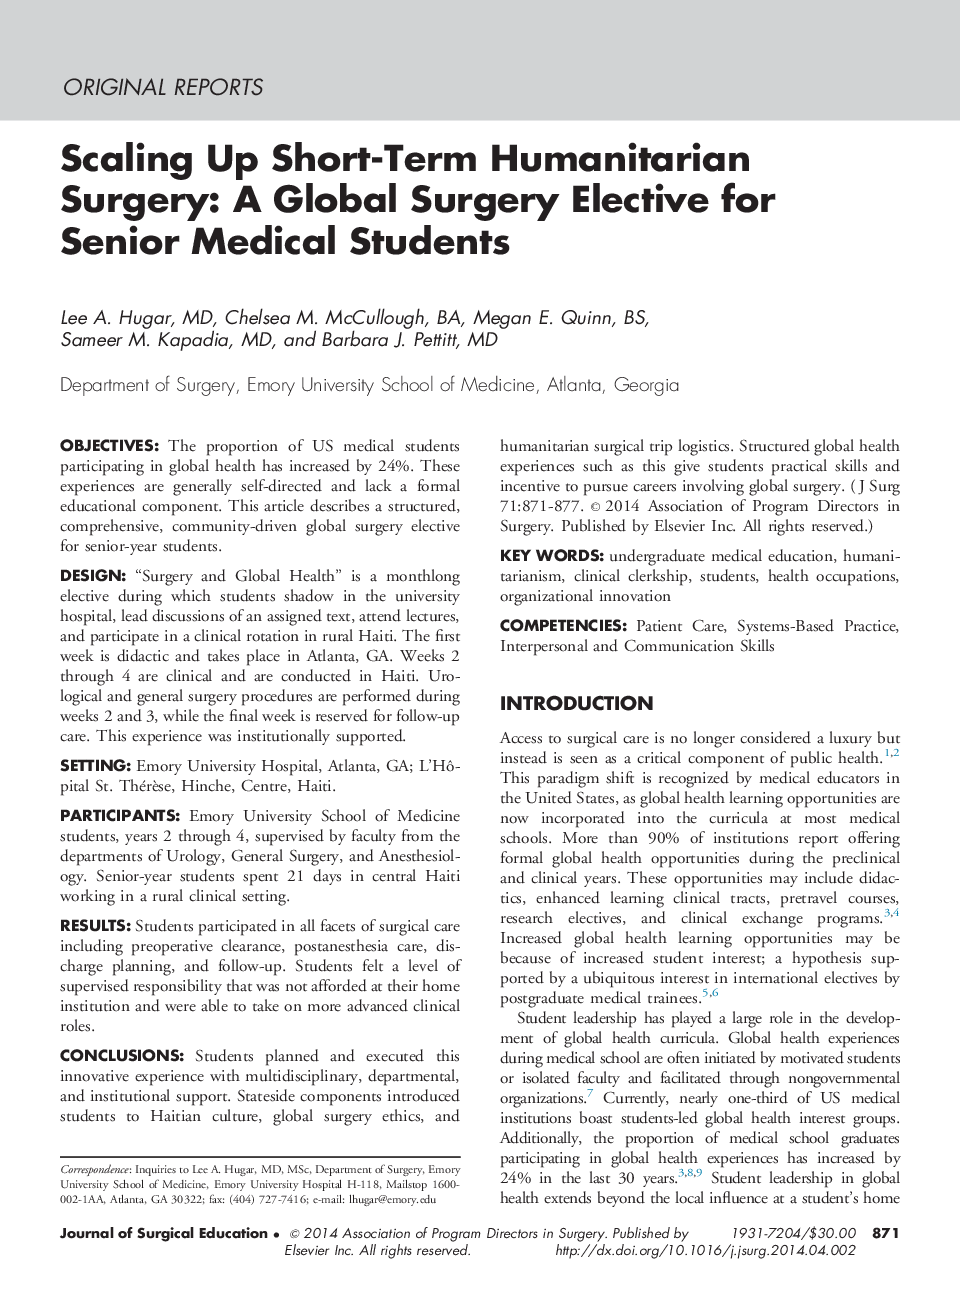 مقیاس کوتاه مدت جراحی انسانی: یک جراحی جهانی برای دانشجویان ارشد پزشکی 